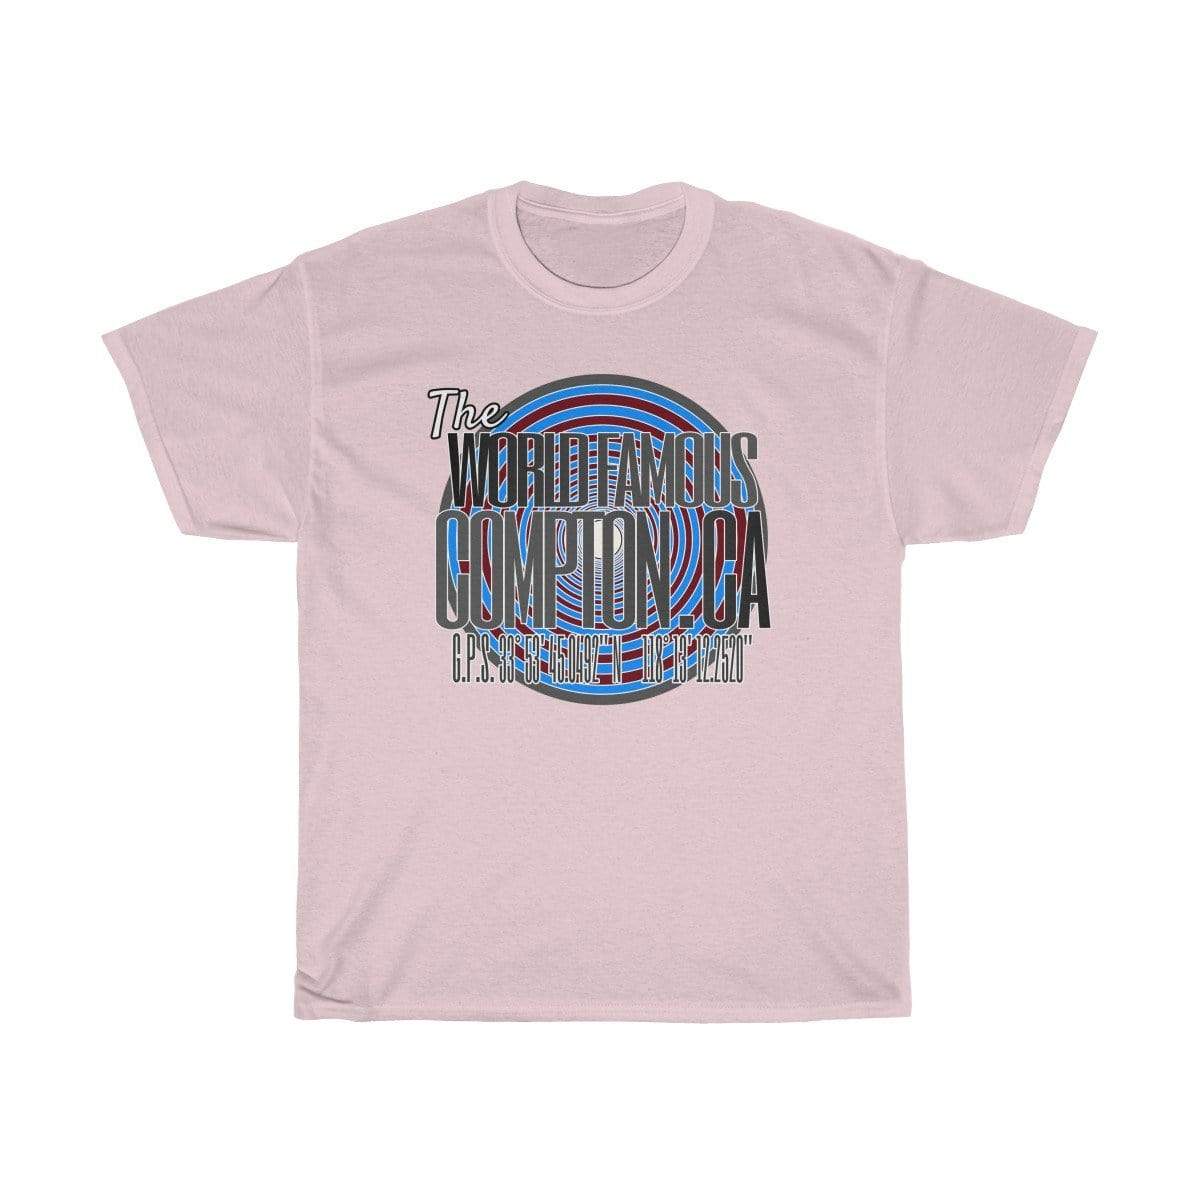 Plumskum T-Shirt Light Pink / S World Famous Compton CA GPS T-Shirt